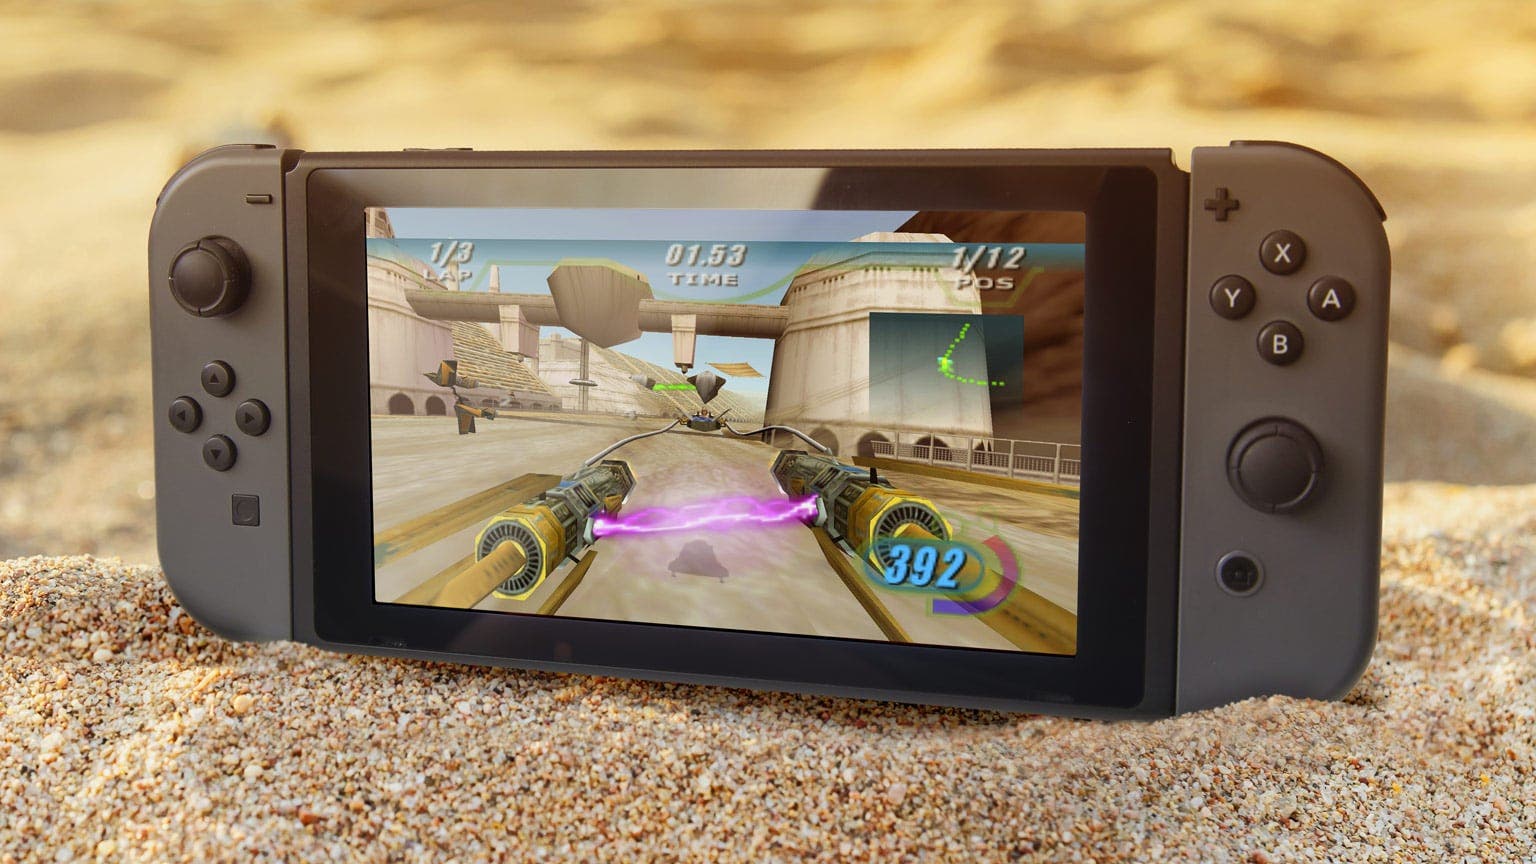 Star Wars Episode I: Racer confirma multijugador LAN y más características en Nintendo Switch